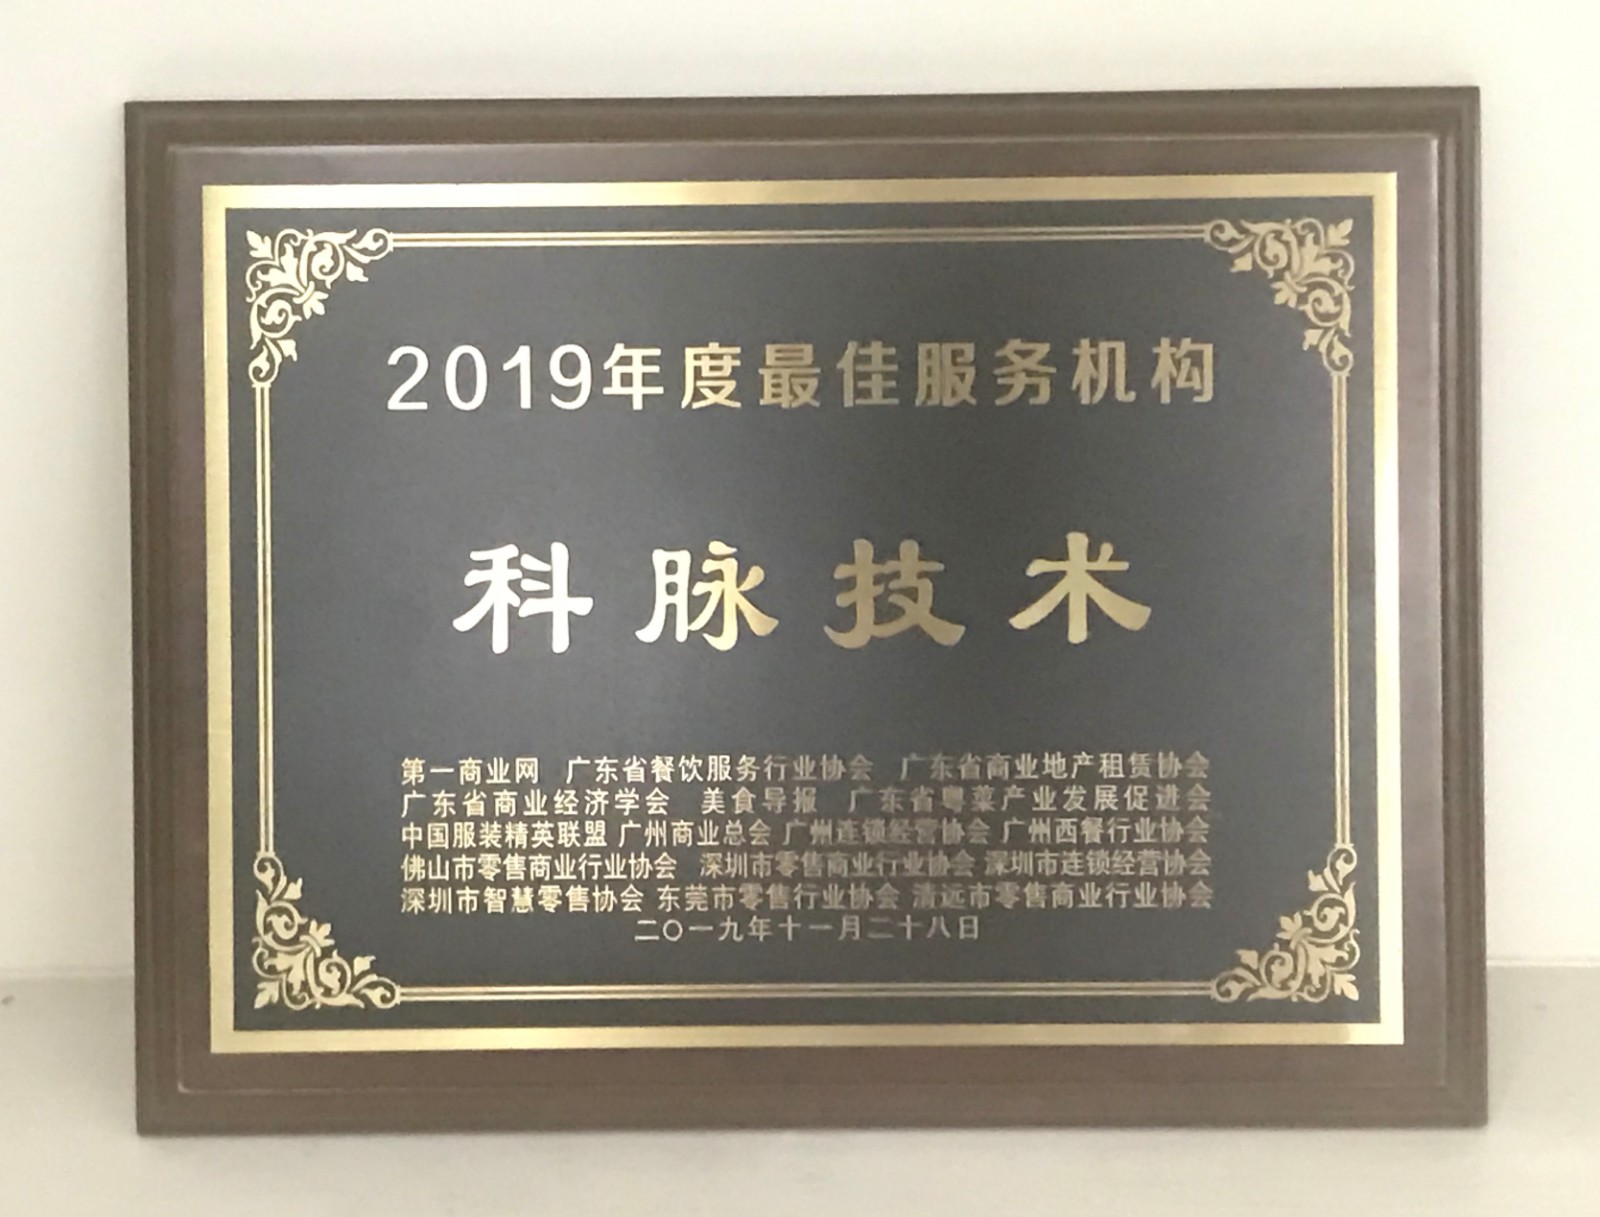 科脉荣获“2019年度最佳服务机构”